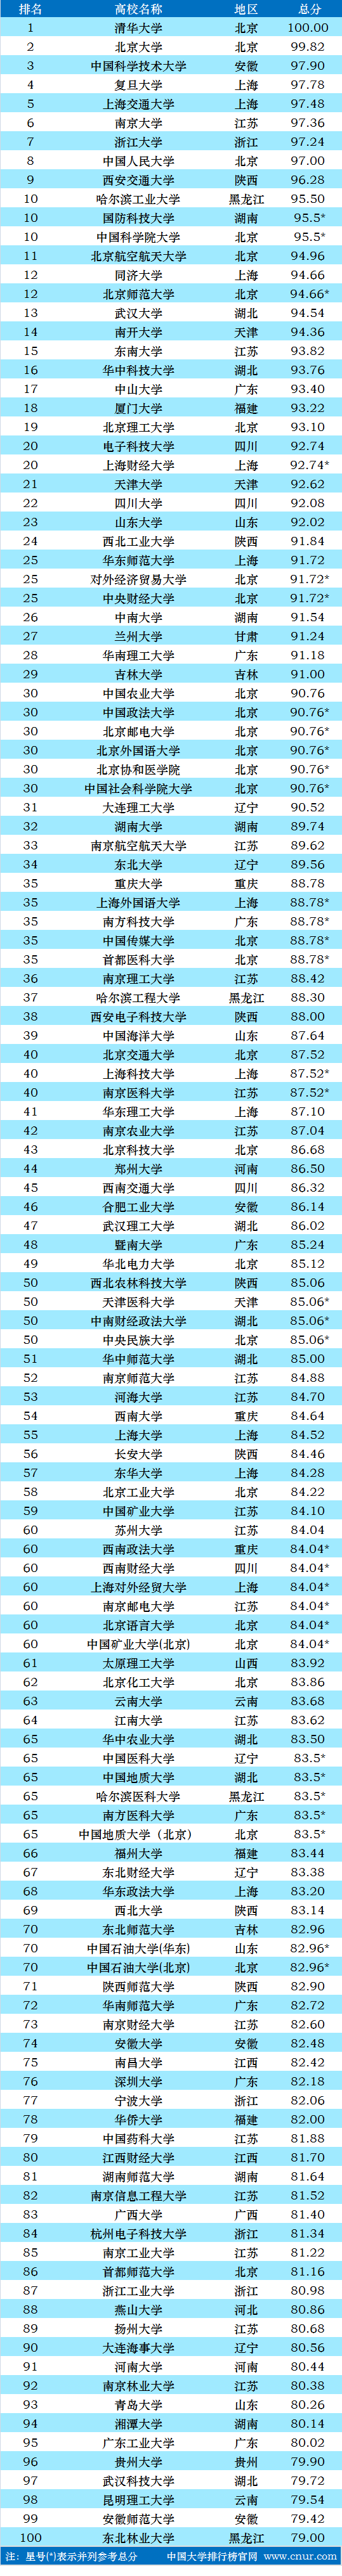 2021中国大学排行榜前100名正式出炉,其中江苏省共有18所高校入榜!